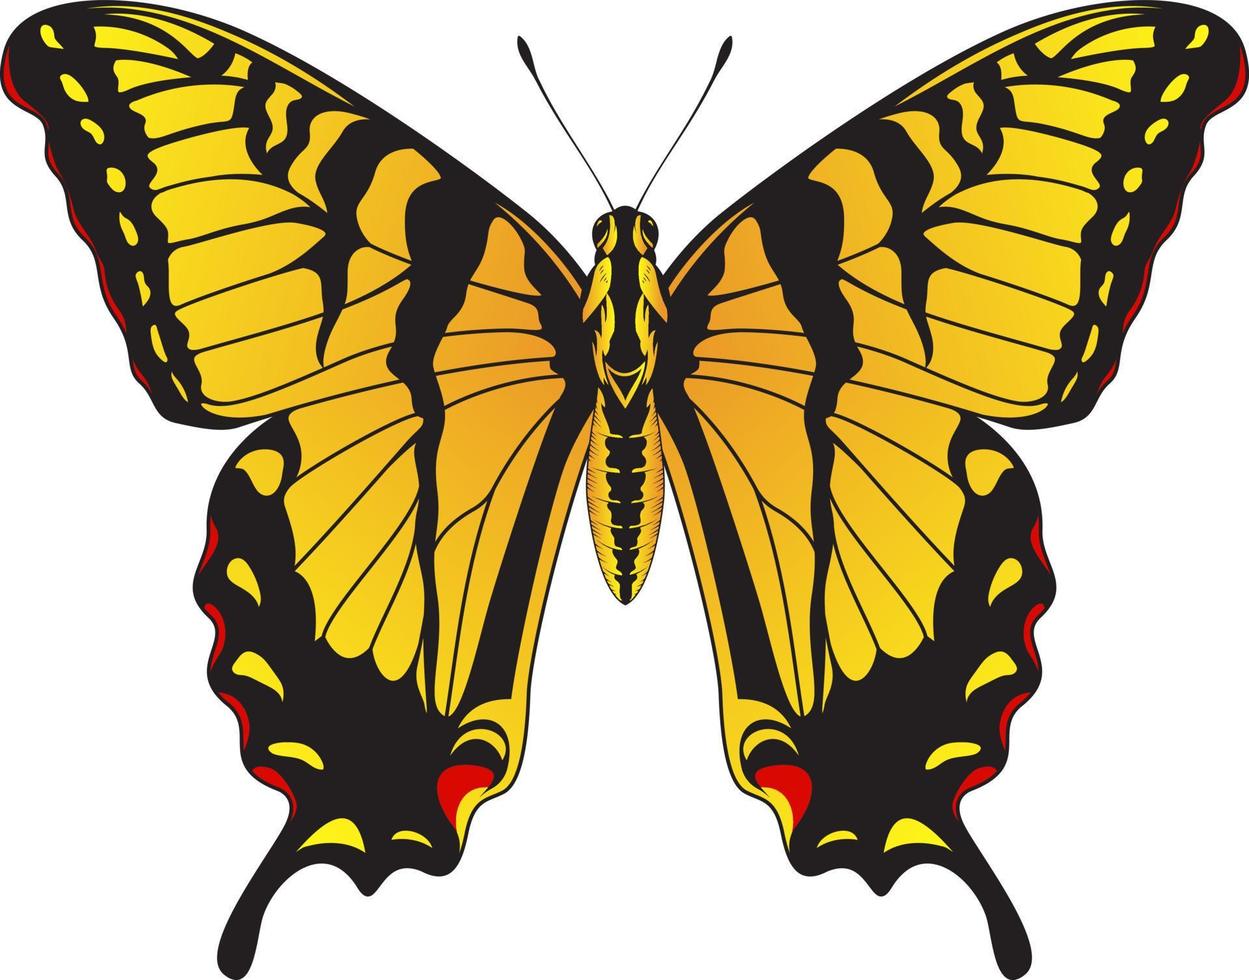 tiger makaonfjäril fjäril - gul och svart randig fjäril vektor illustration